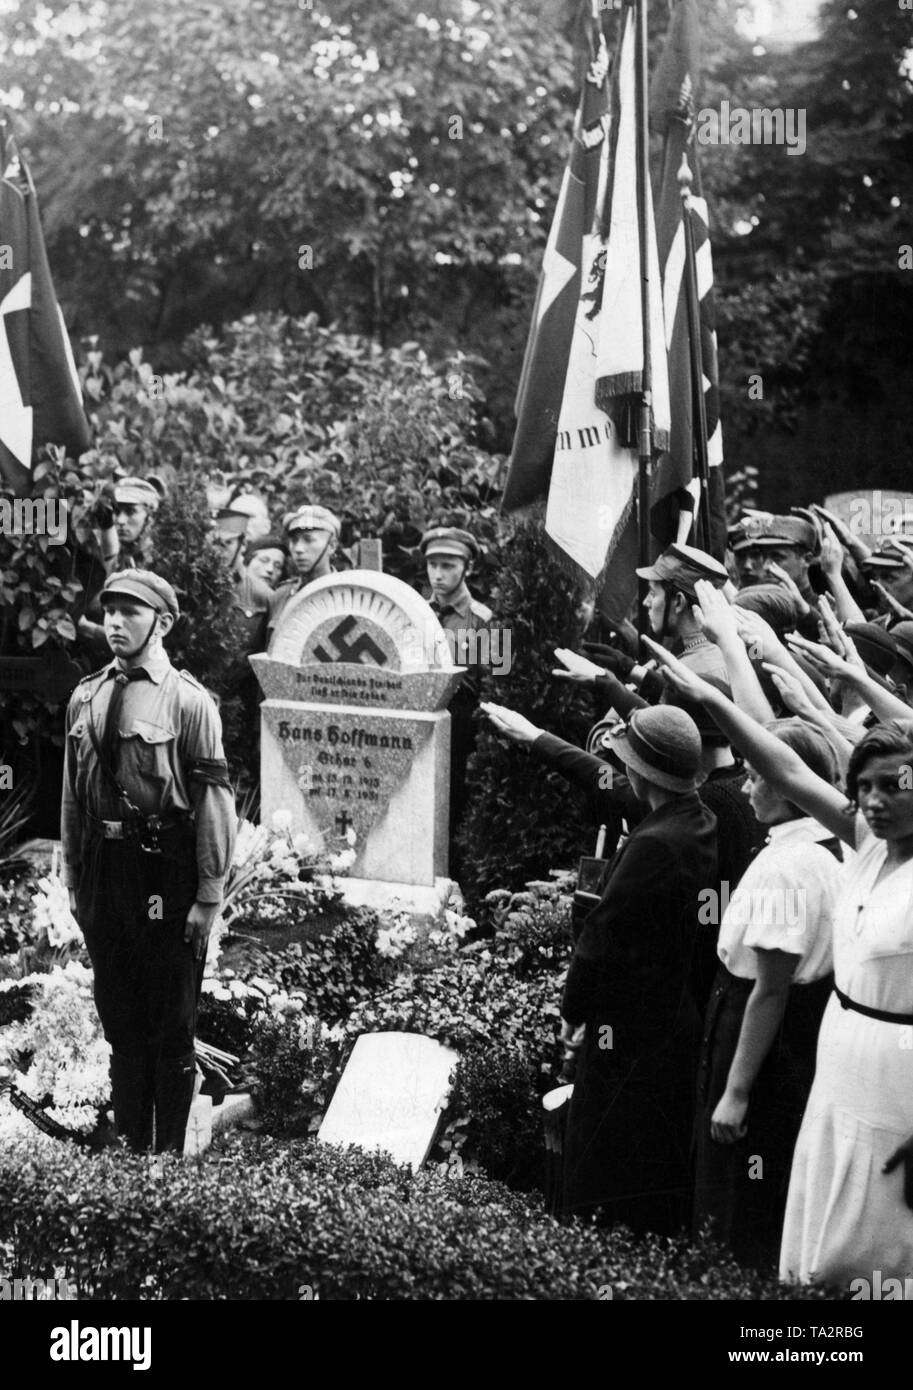 À l'instruction Alter Garnisonfriedhof à la Hasenheide à Berlin-Neukoelln Columbiadamm, une pierre commémorative a été consacrée à l'Hitlerjunge, Hans Hoffmann, qui a été tué sur le Lausitzer Platz dans Kreuzberg le 17 août. Banque D'Images